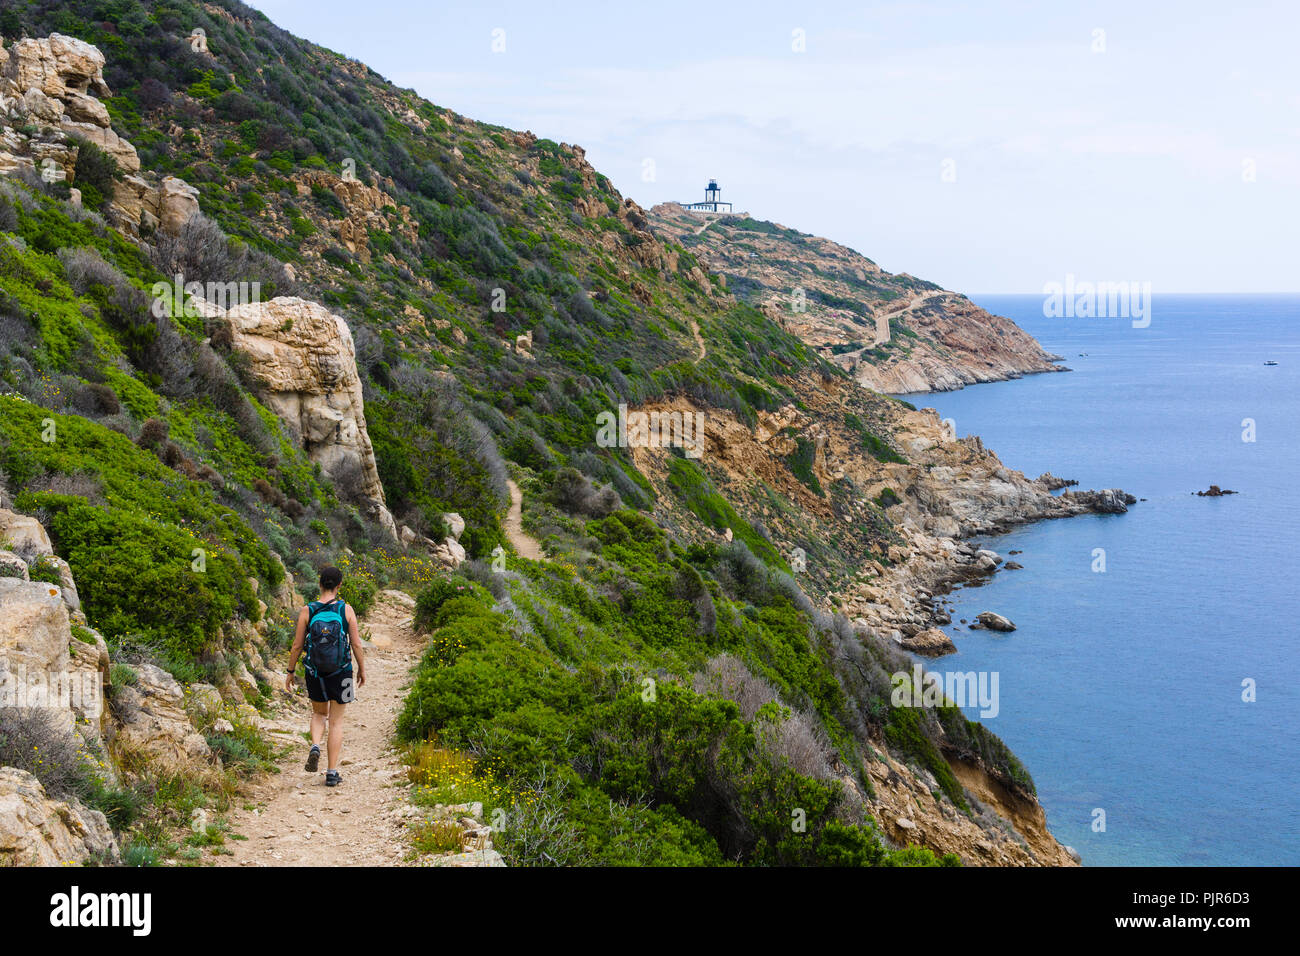 Sentier de la Revellata hiking trail, Pointe de la Revellata, Calvi, Corsica, France Stock Photo